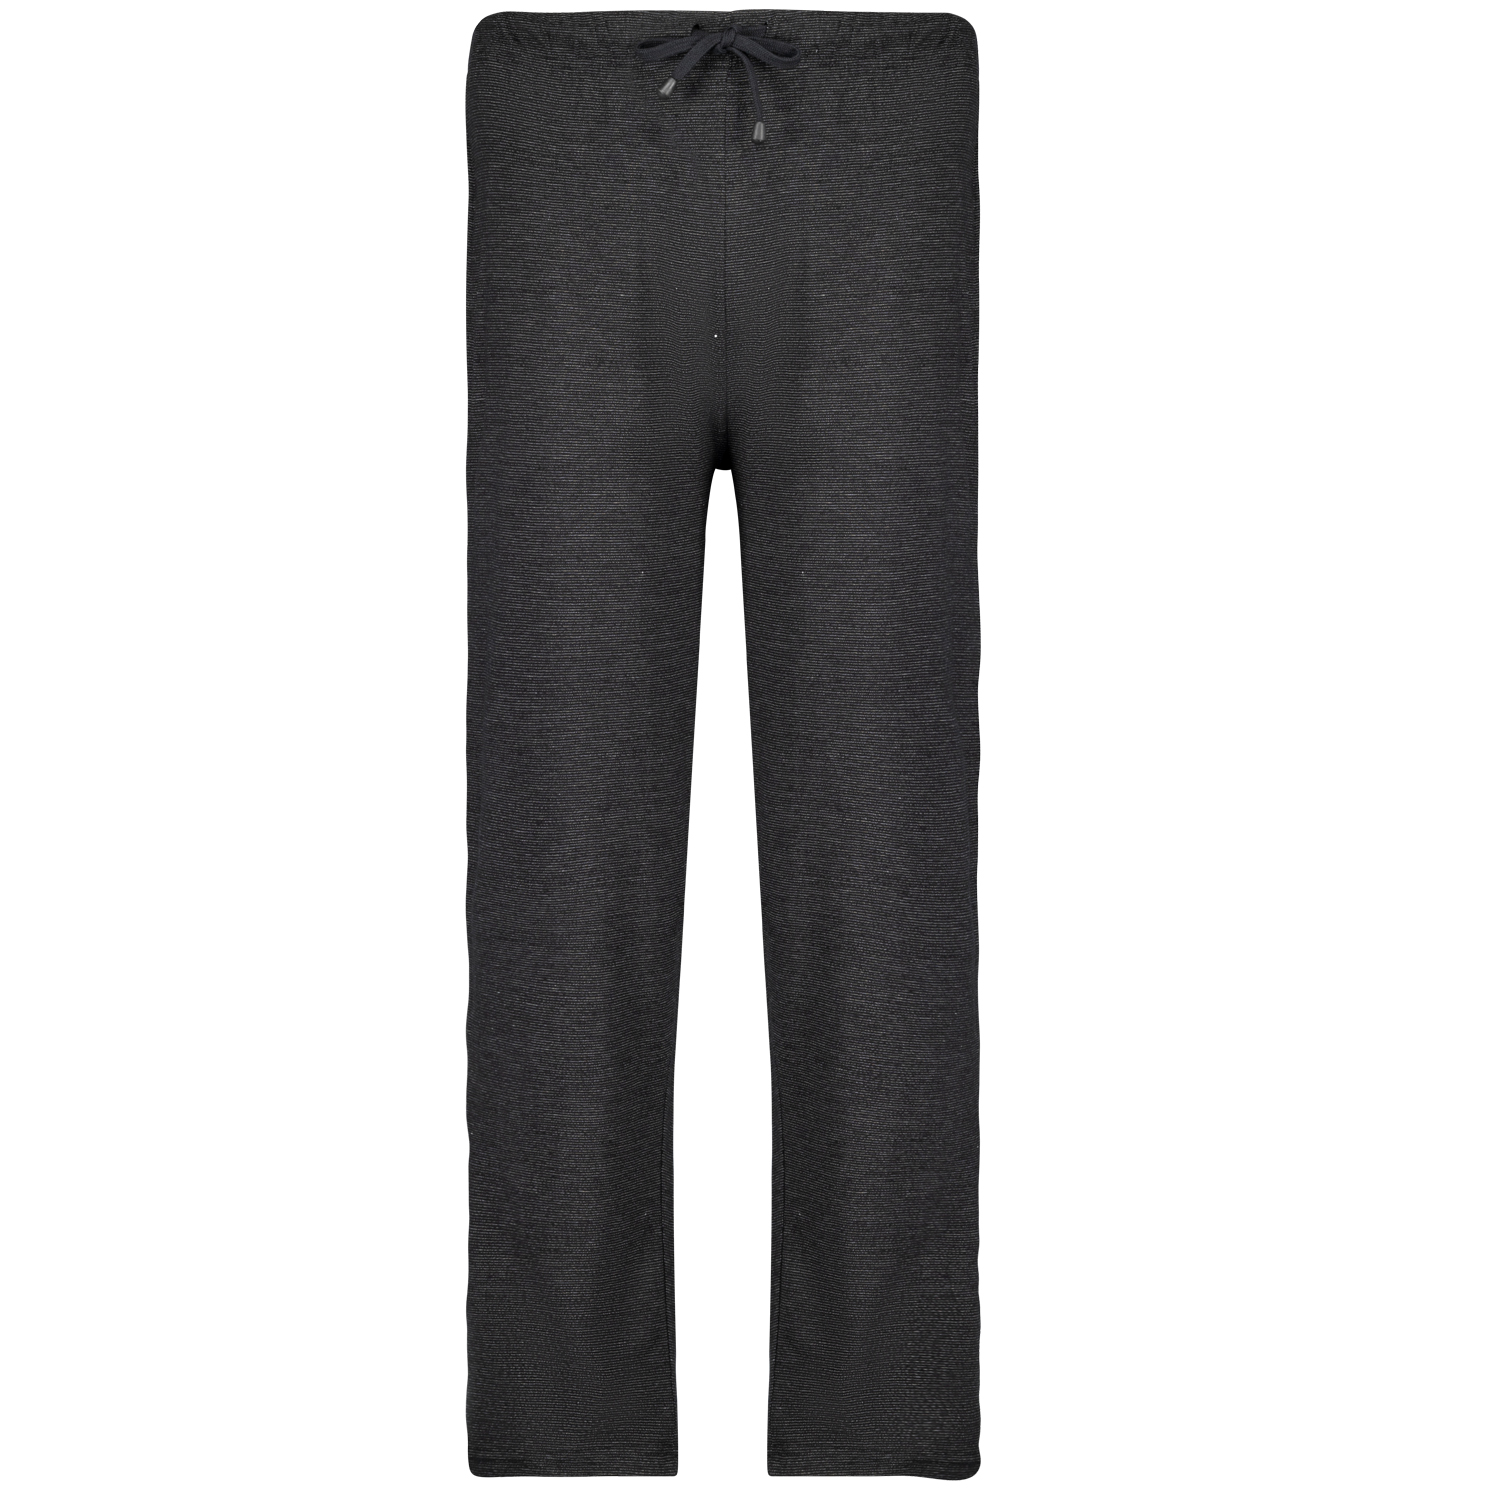 Pantalon de loisirs long série Leon by ADAMO jusqu'à la grande taille 12XL - noir moucheté